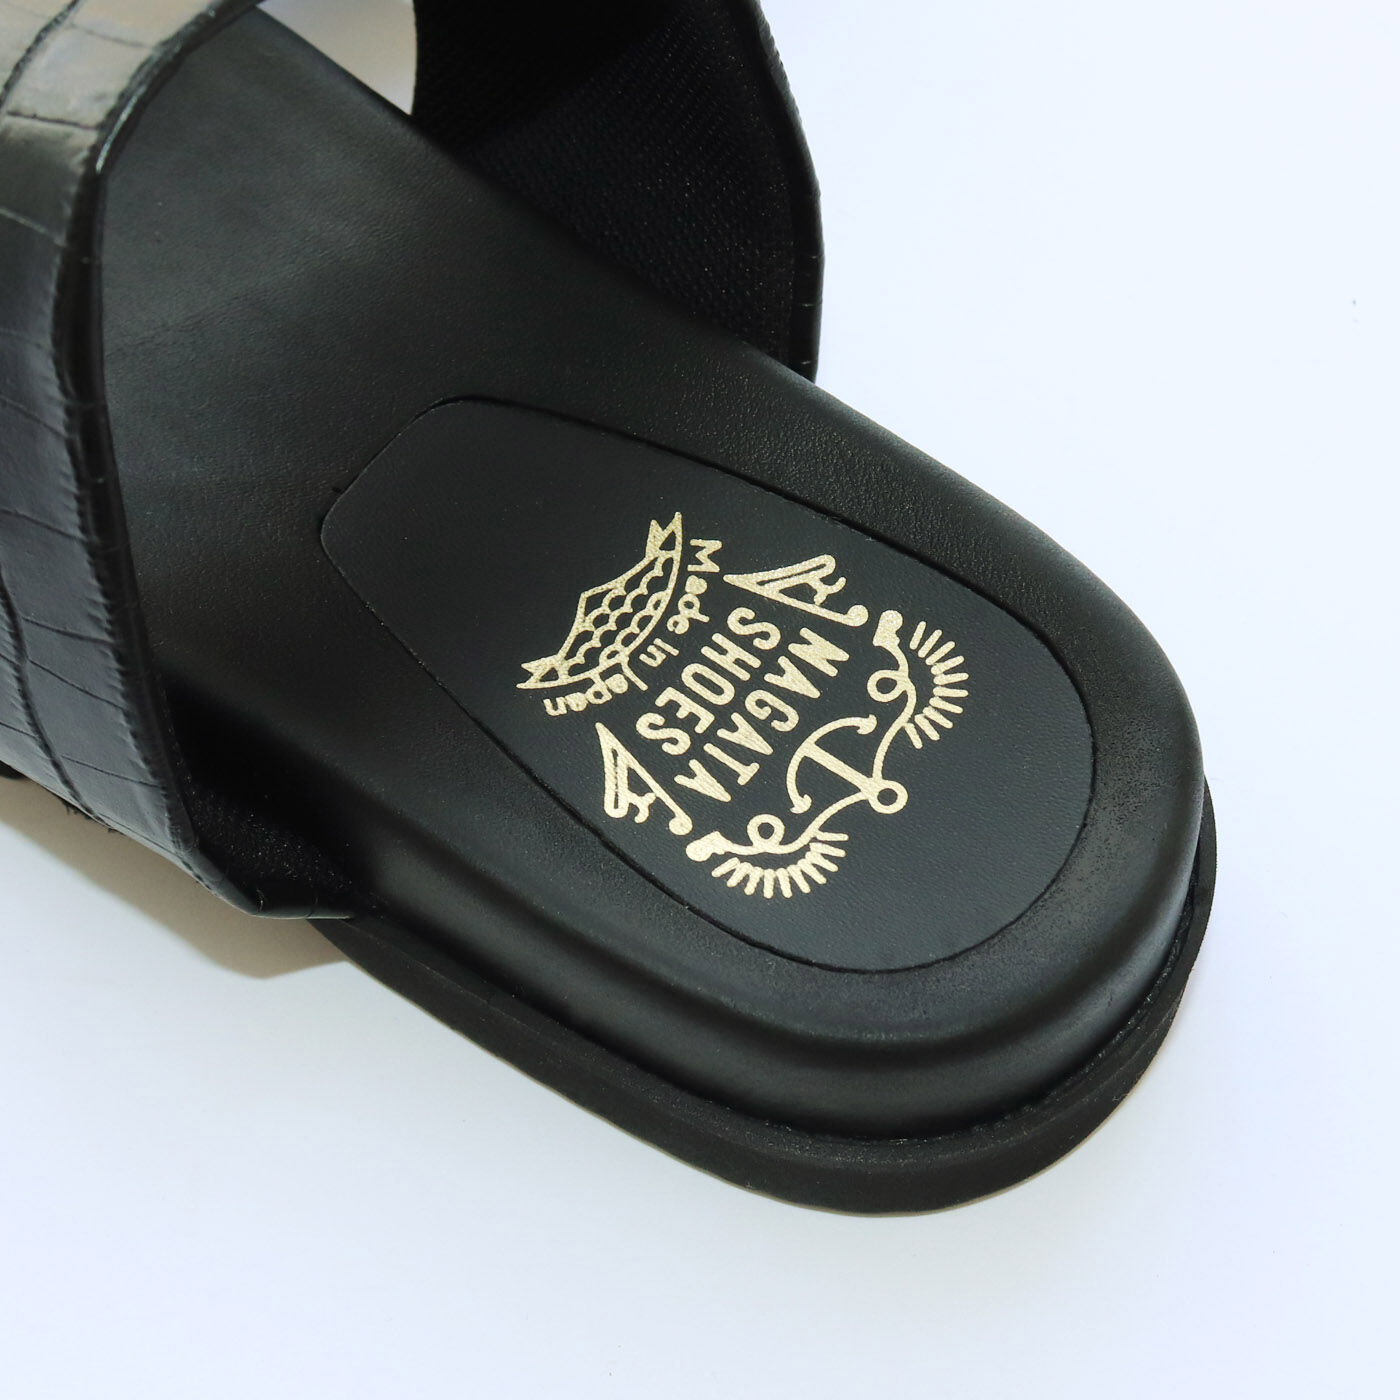 ＆Stories|靴デザイナーの理想で仕上げた 職人本革のトングシューズ〈クロコ型押し柄・ブラック〉|かかとにもかわいいロゴプリント。